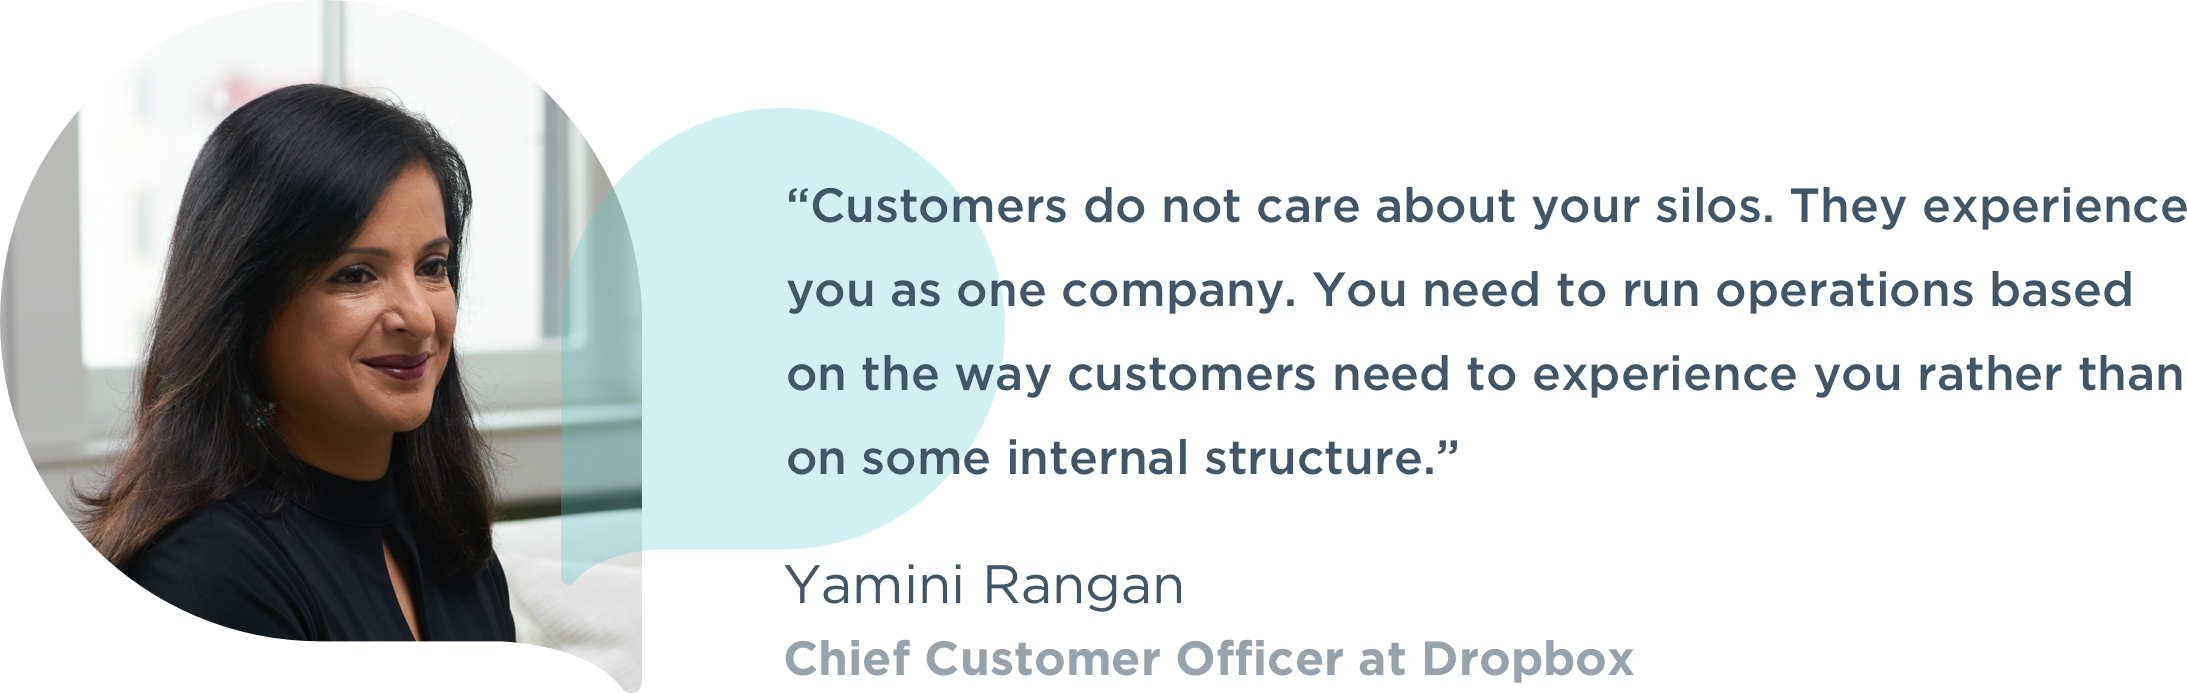 Headshot and quote from Yamini Rangan, Chief Customer Officer at Dropbox